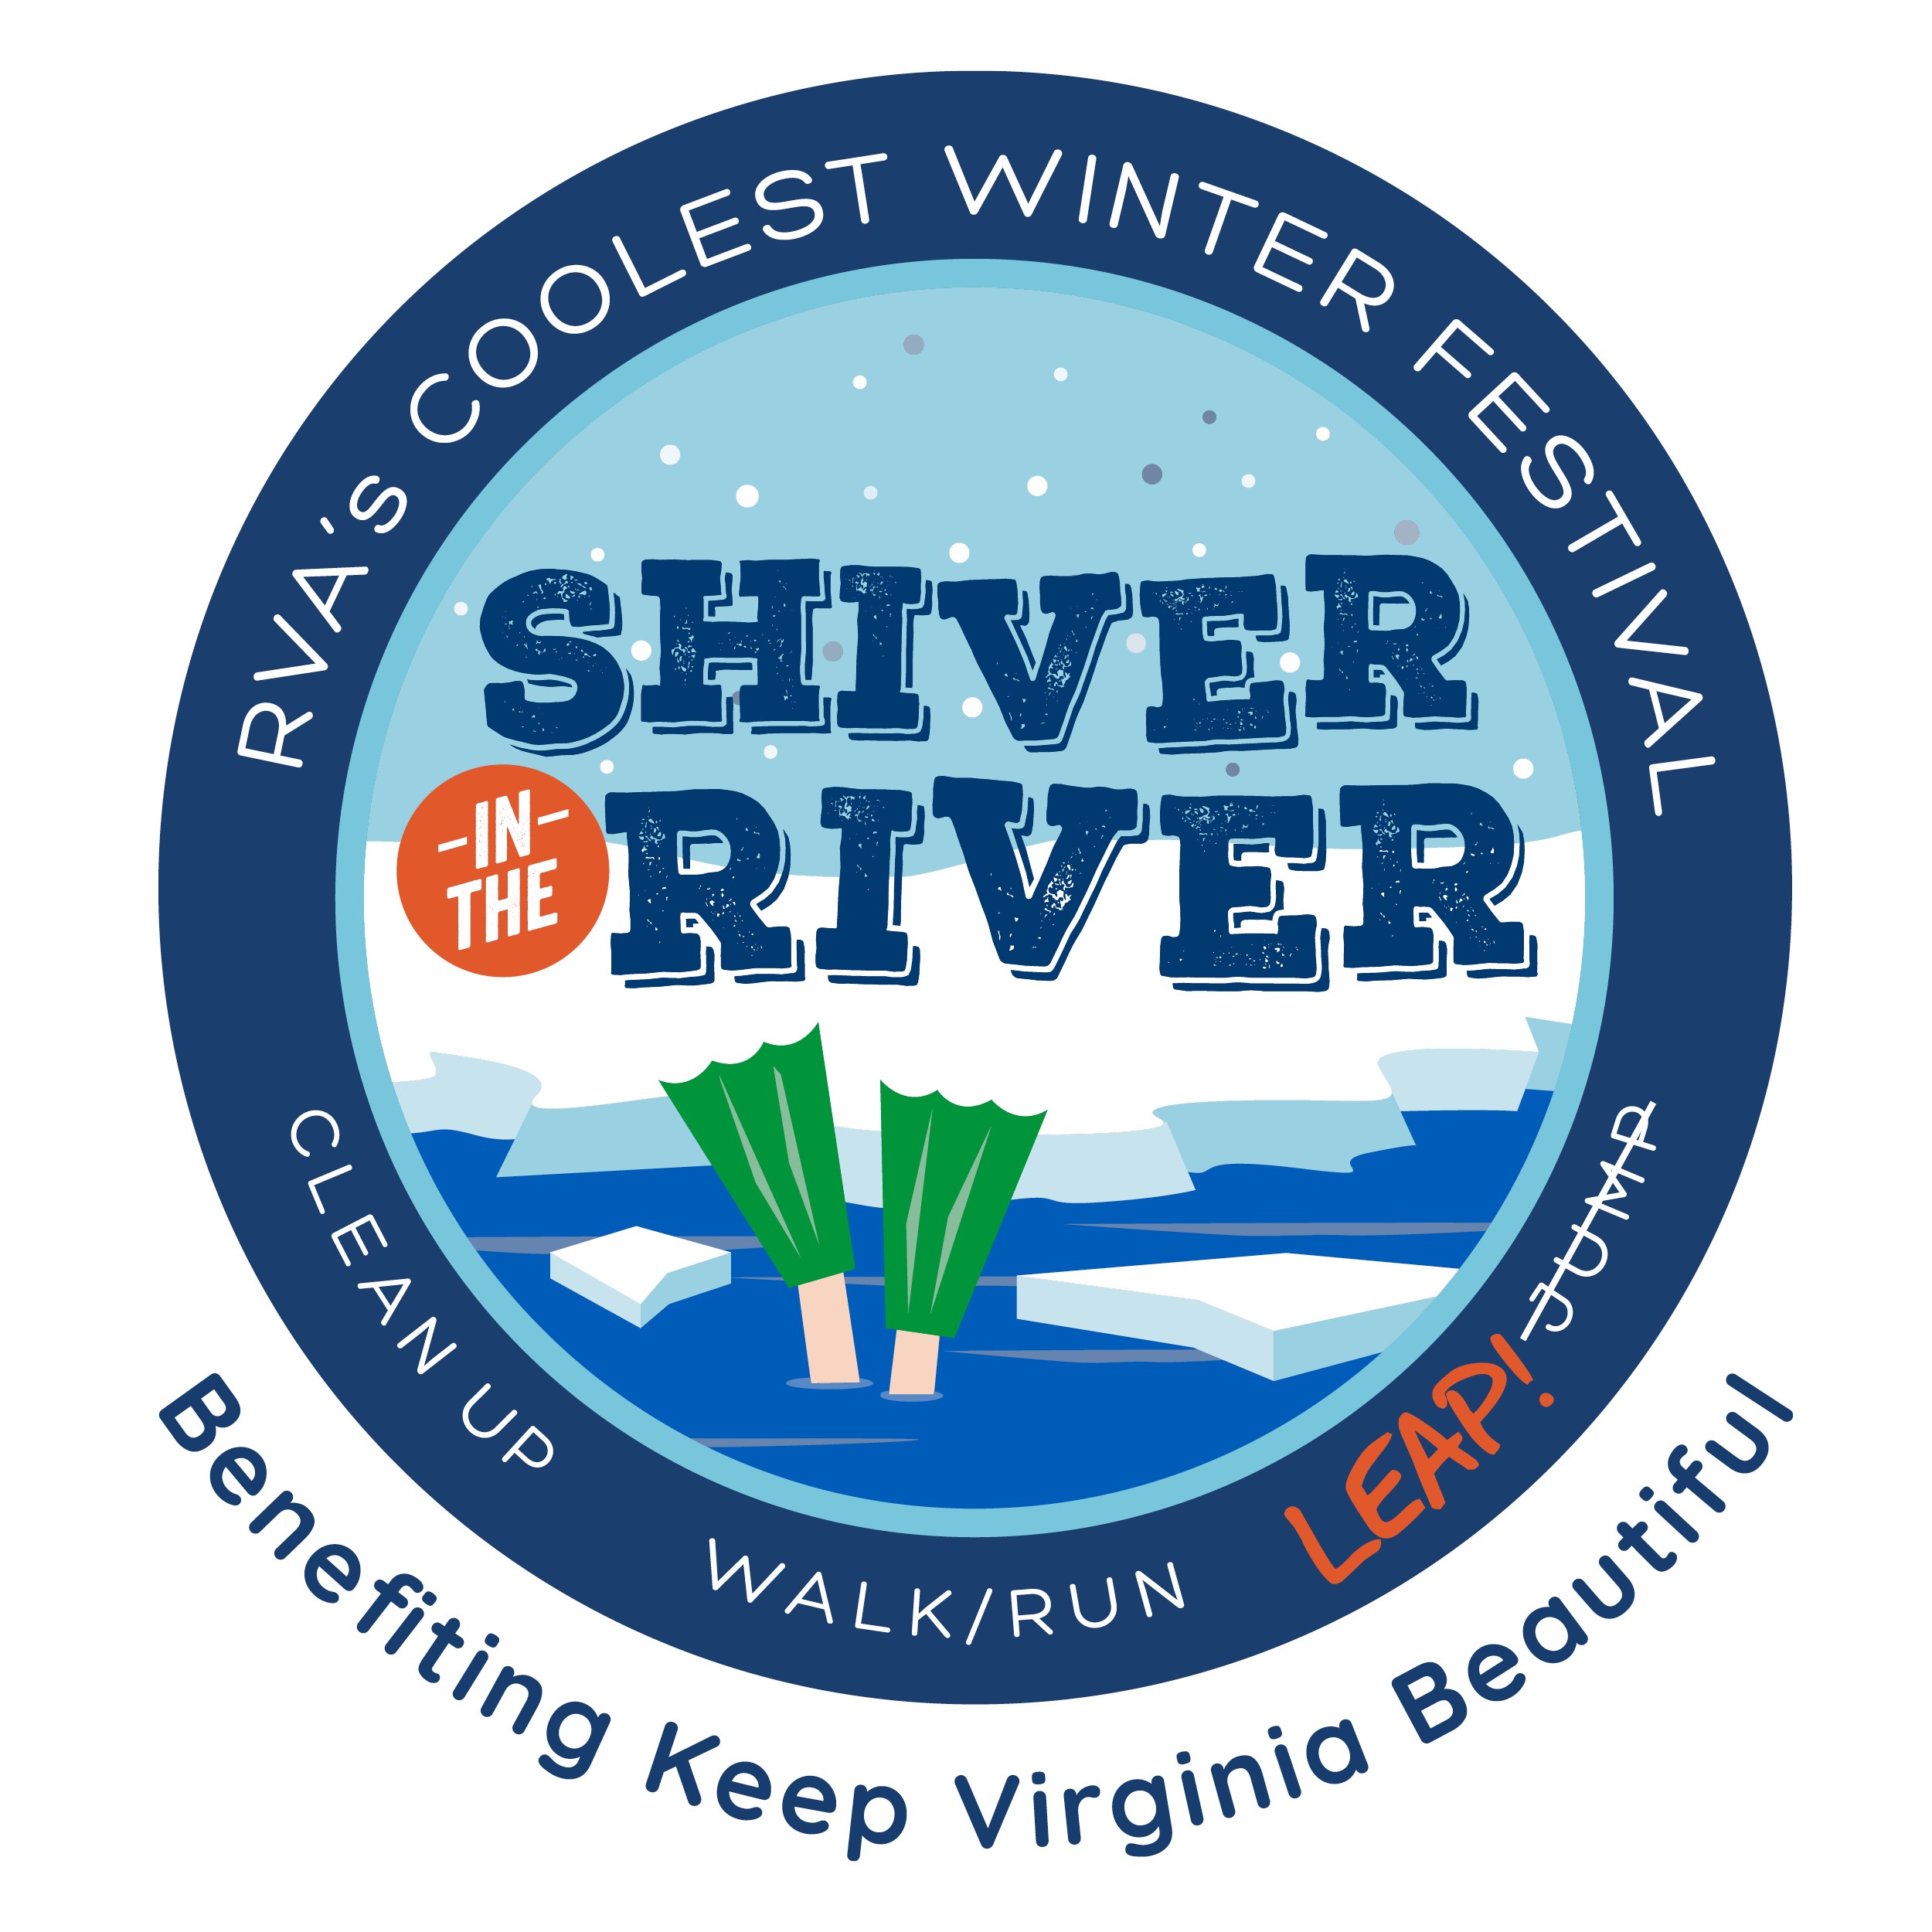 Shiver in the River 5K logo on RaceRaves